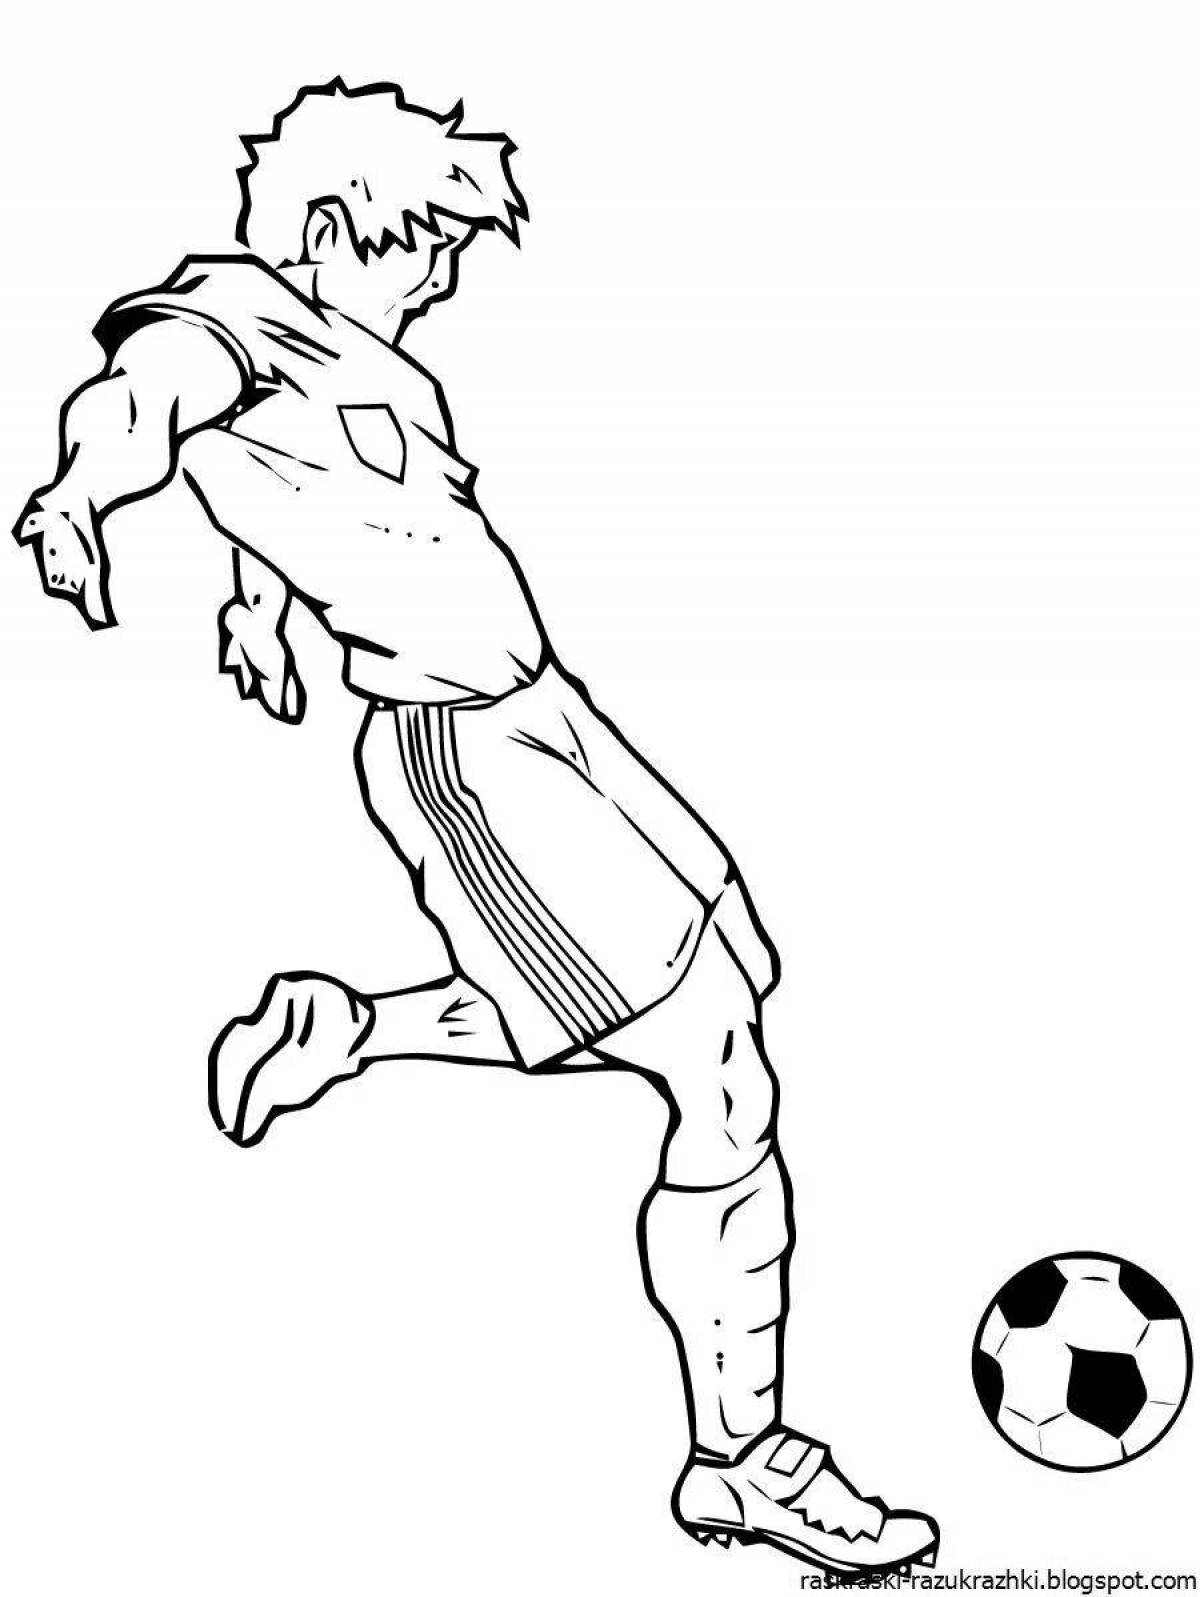 Красочный футболист с мячом